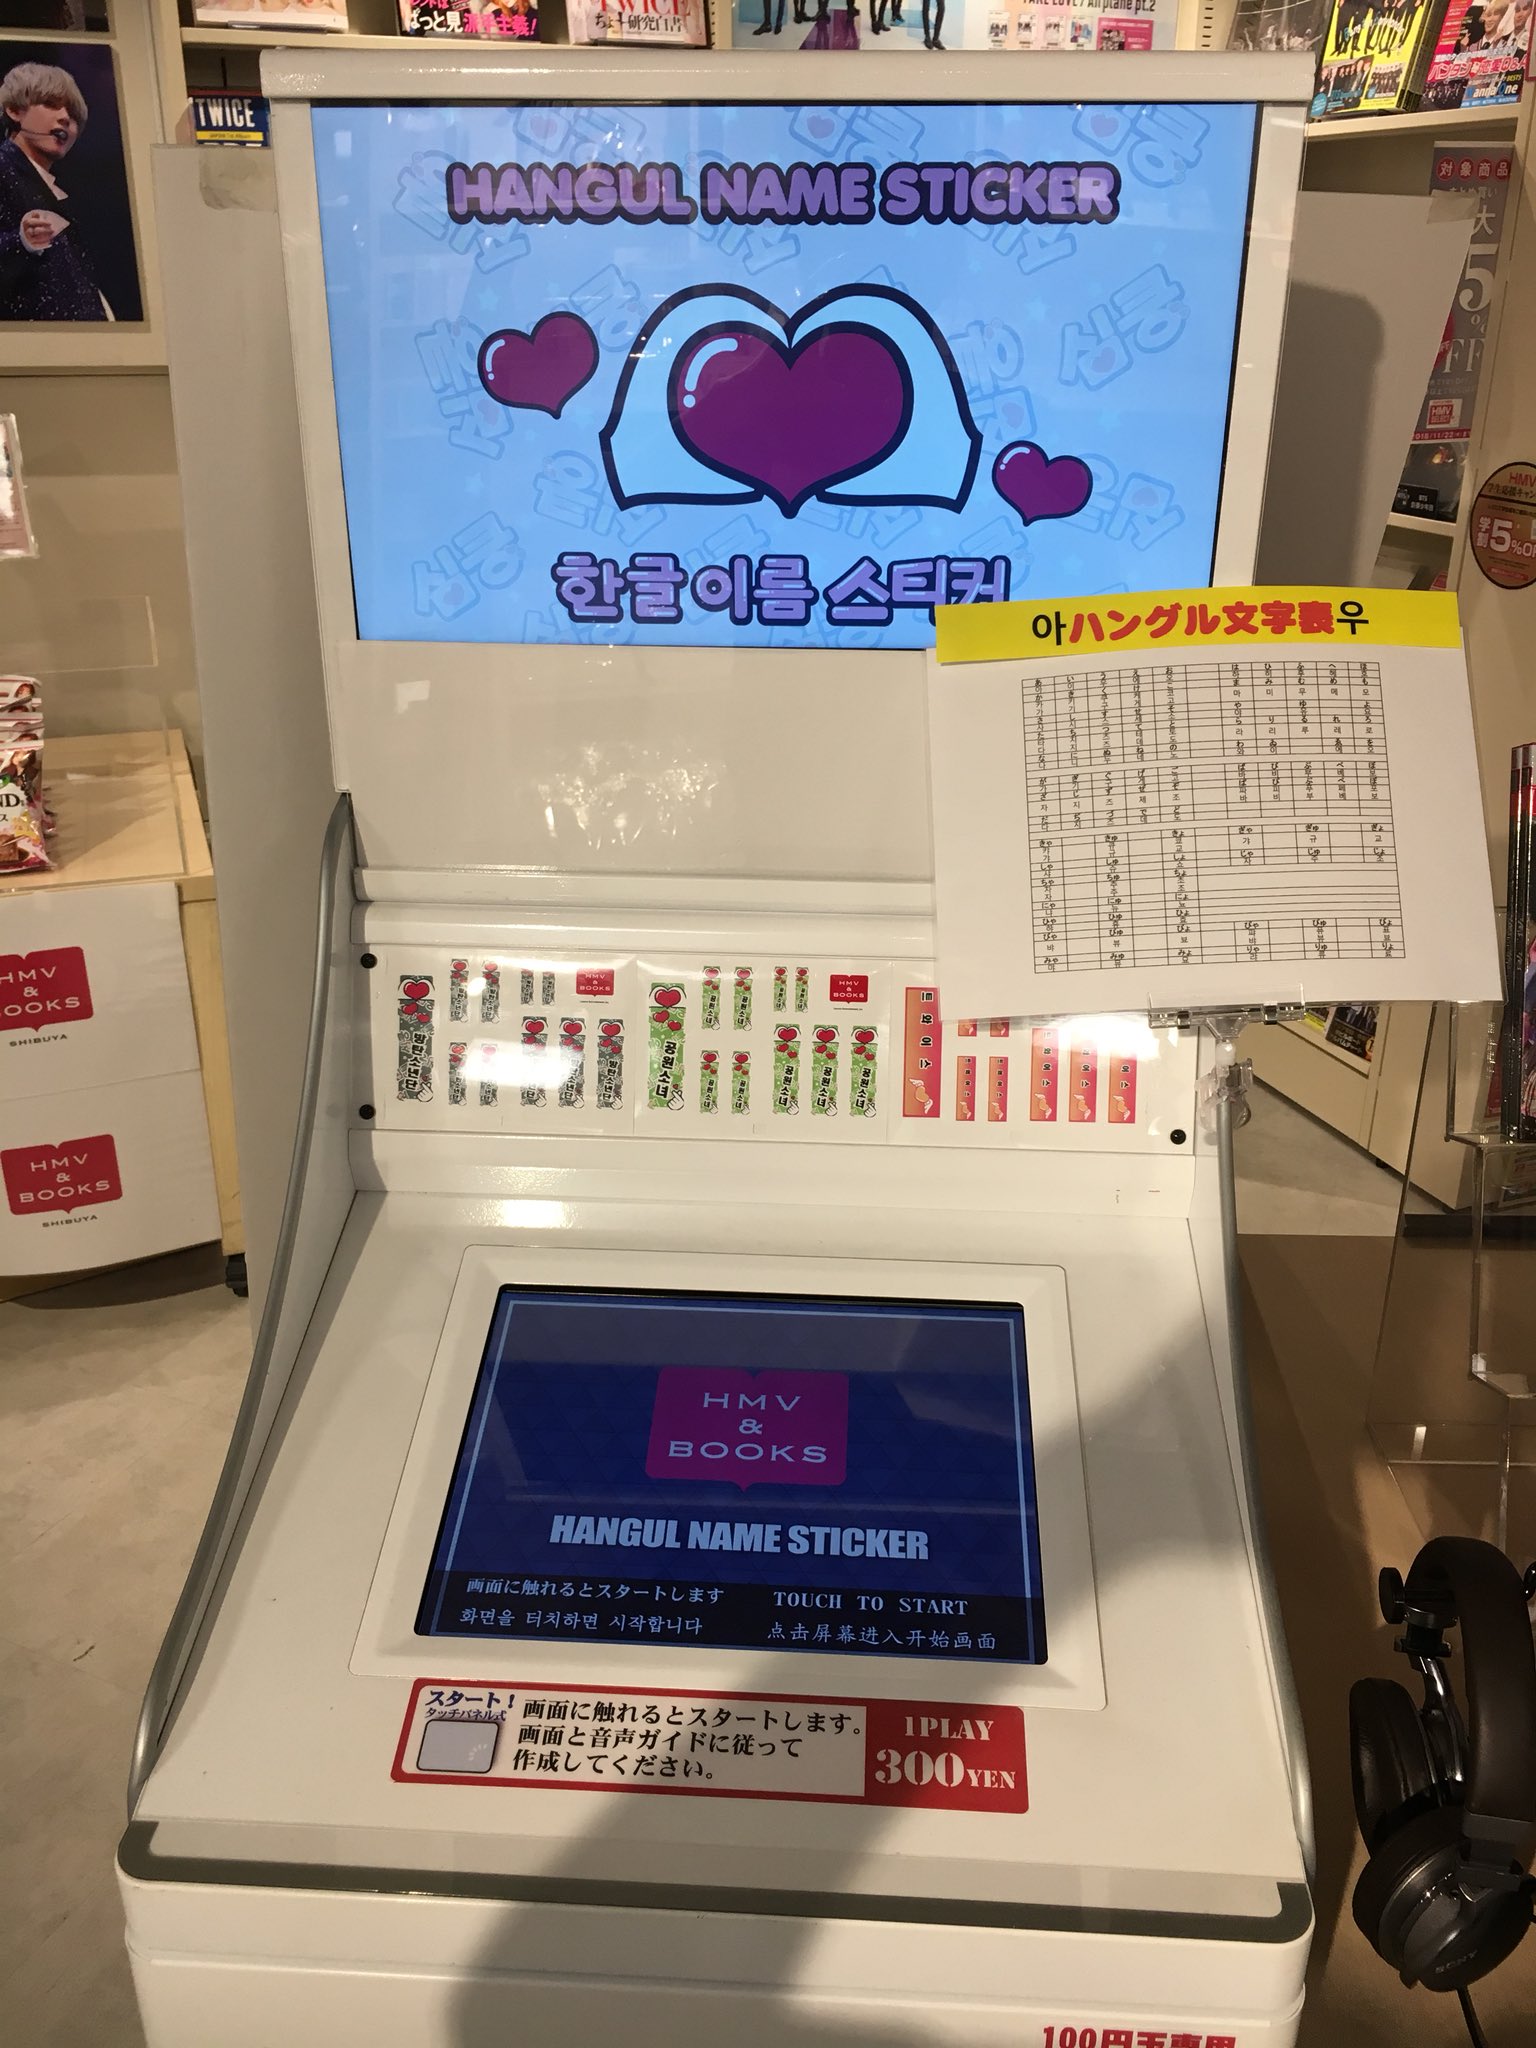 Hmv Books Shibuya Sur Twitter ハングルネームステッカー 当店で実施中の Battle Boysミュージアム でも大好評 稼働中のネームステッカー機に新たにハングル文字対応機が7階に登場しました 7階k Popコーナーにて1回300円 にて あなただけのハングル語